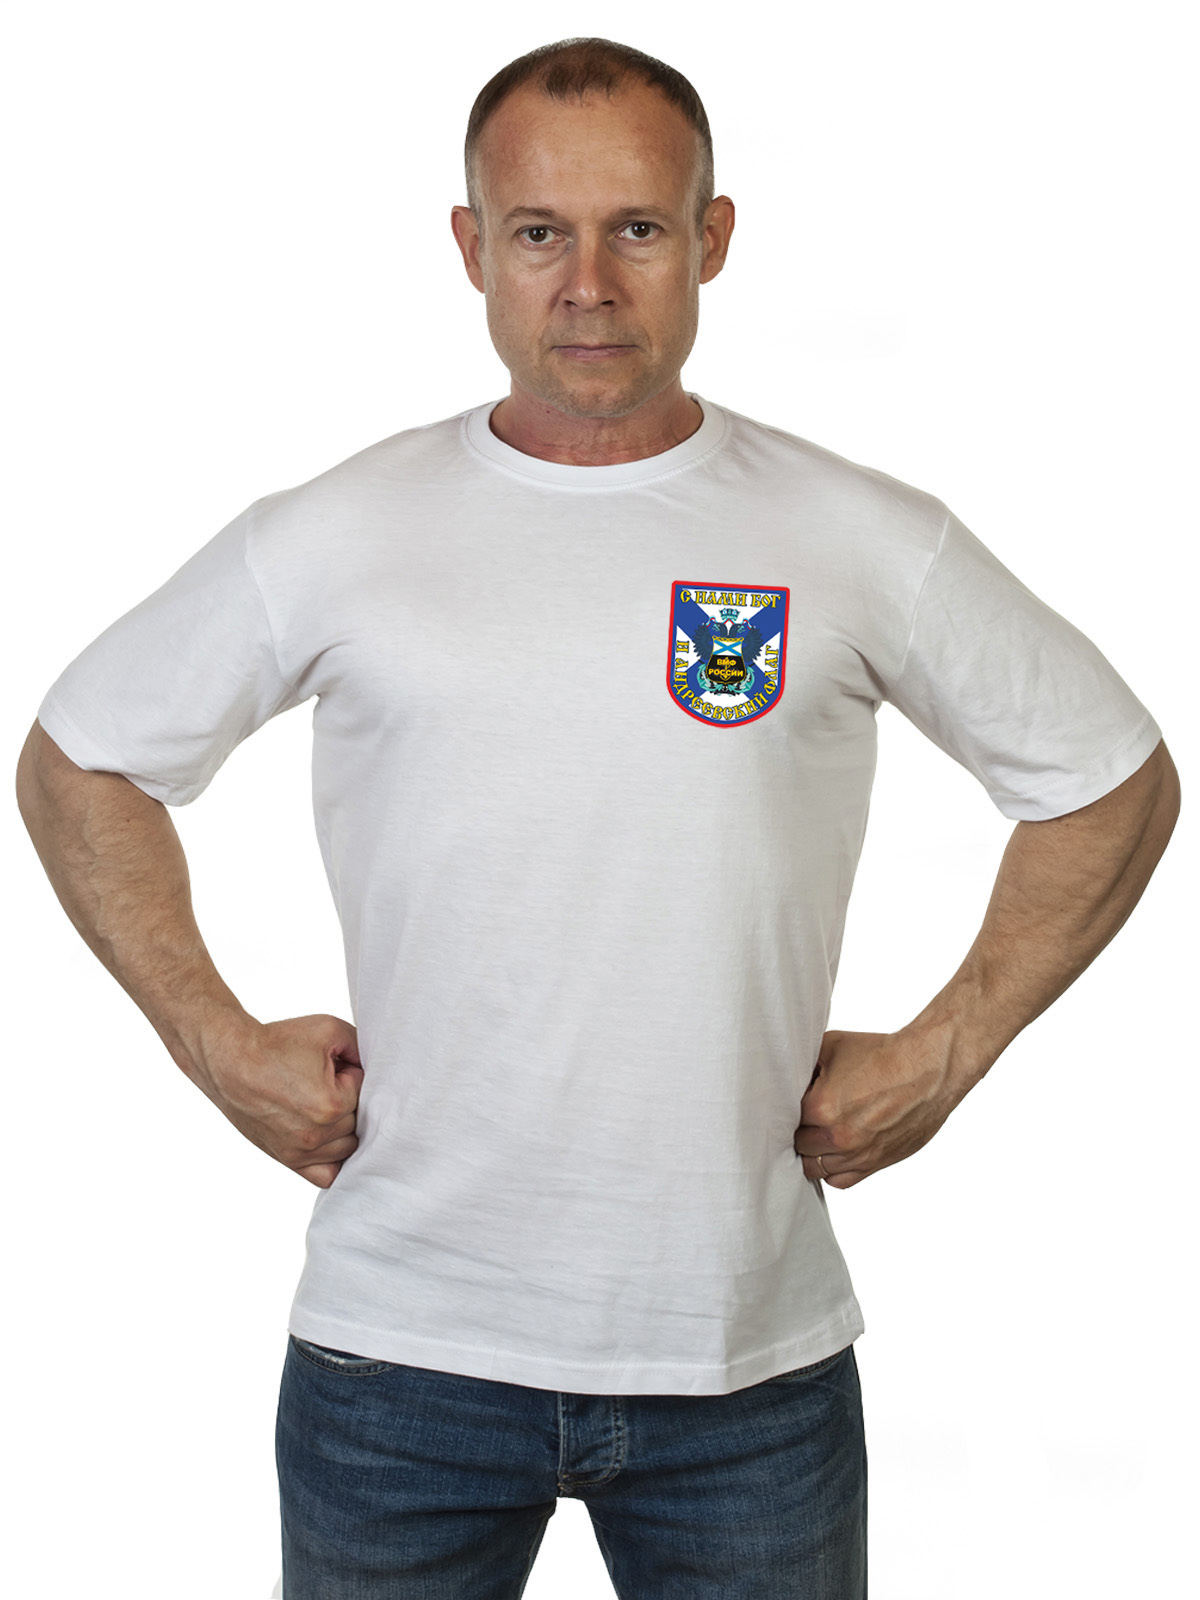 Чёрная футболка ВМФ России с девизом 